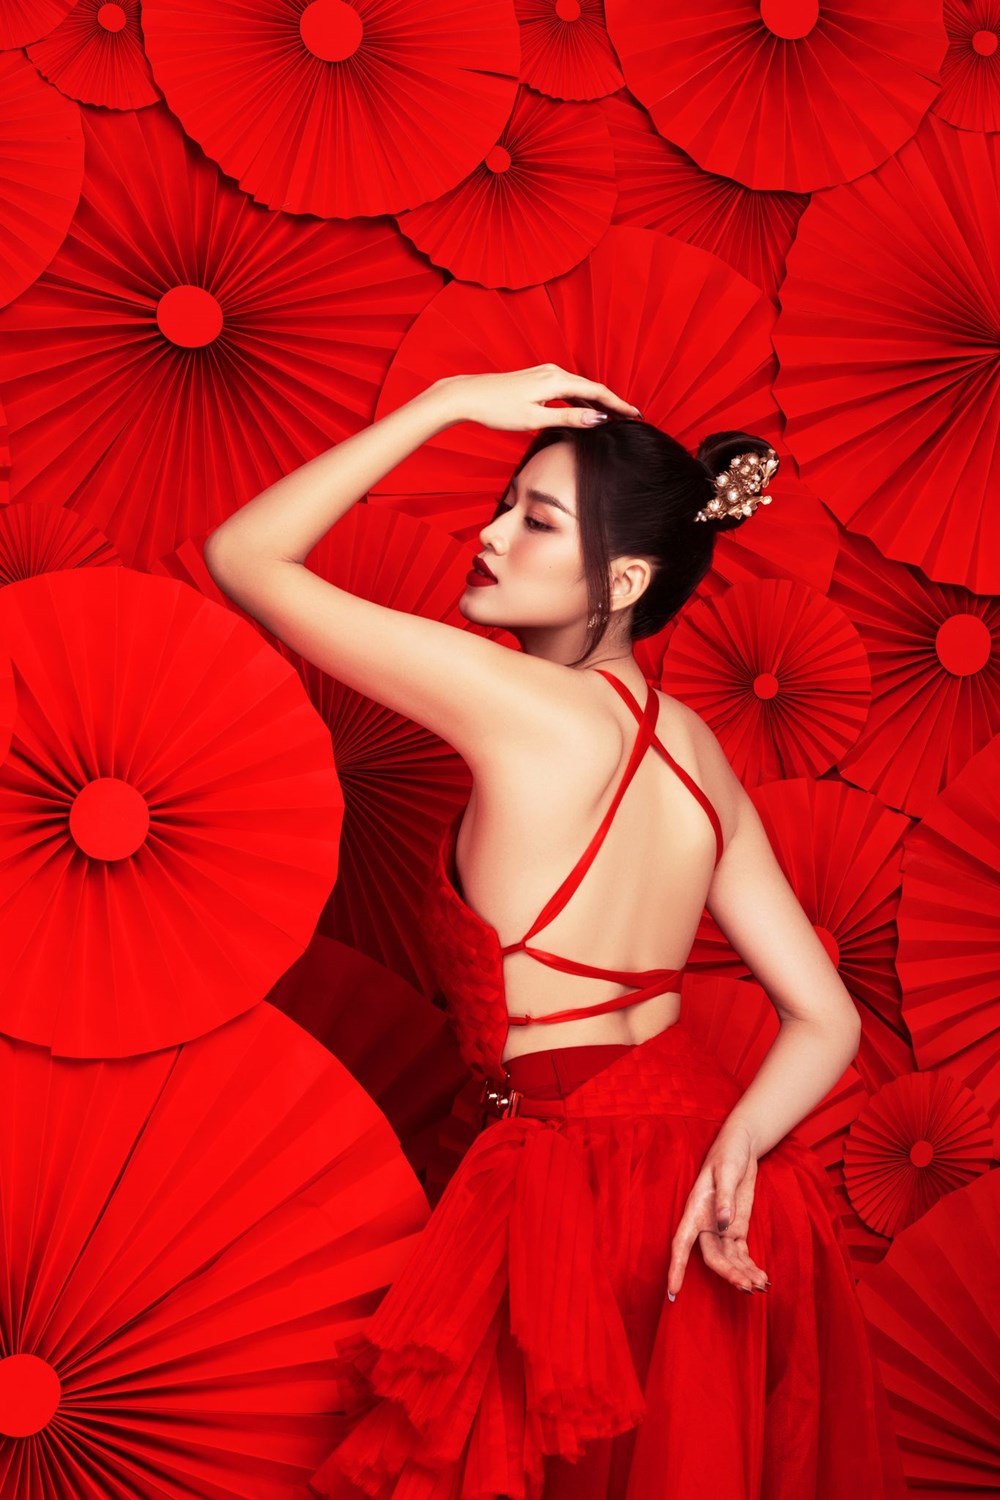 Hoa hậu Đỗ Hà diện yếm đỏ, khoe lưng trần gợi cảm trong bộ ảnh Tết - ảnh 4